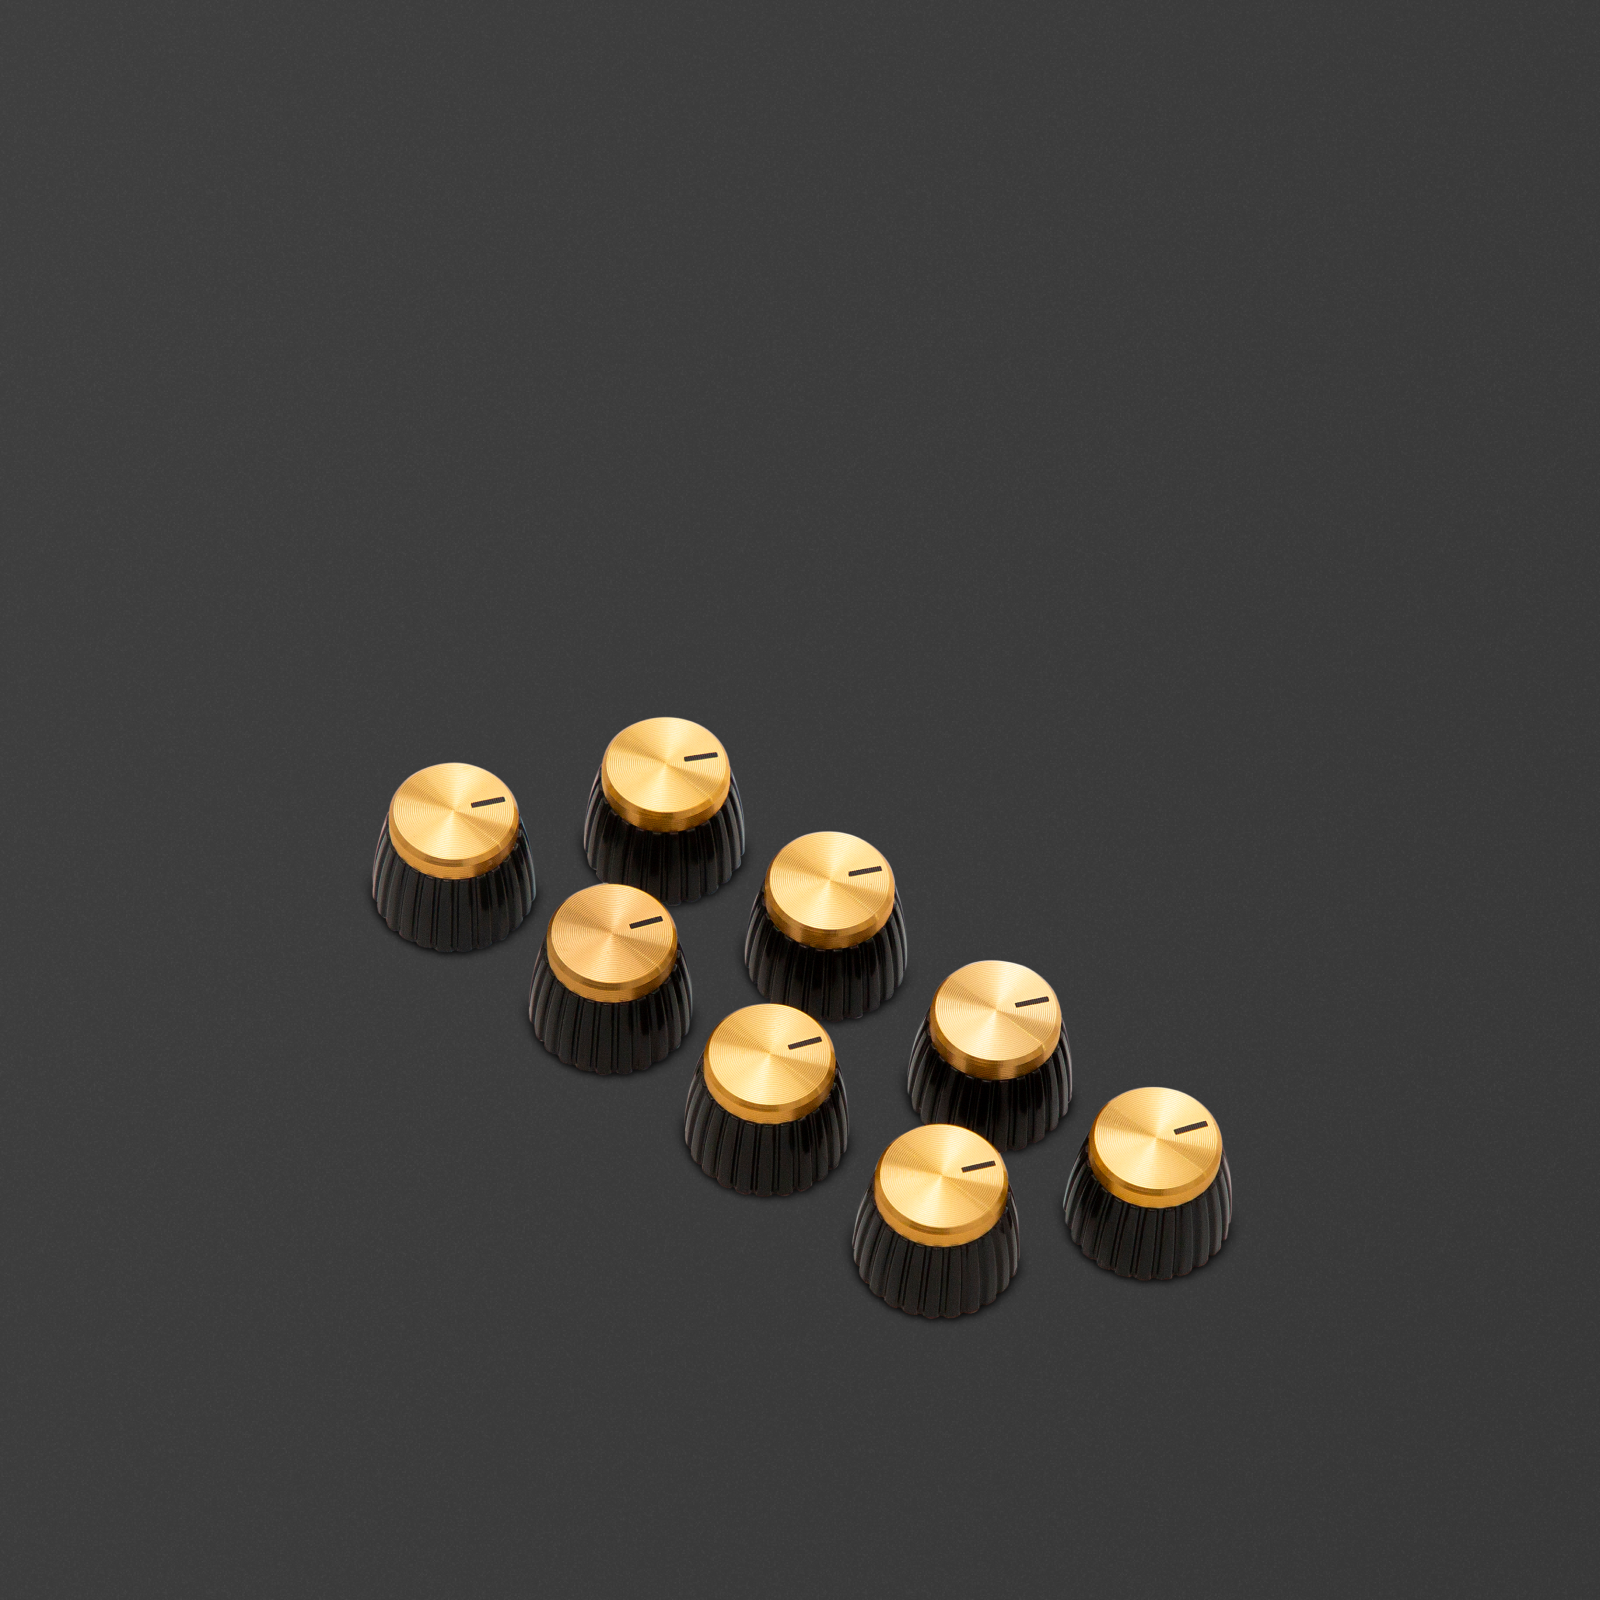 Packung mit 8 goldenen D-Schaft-Knöpfen, bei denen die Markierung auf die runde Seite des D-Schaftes zeigt